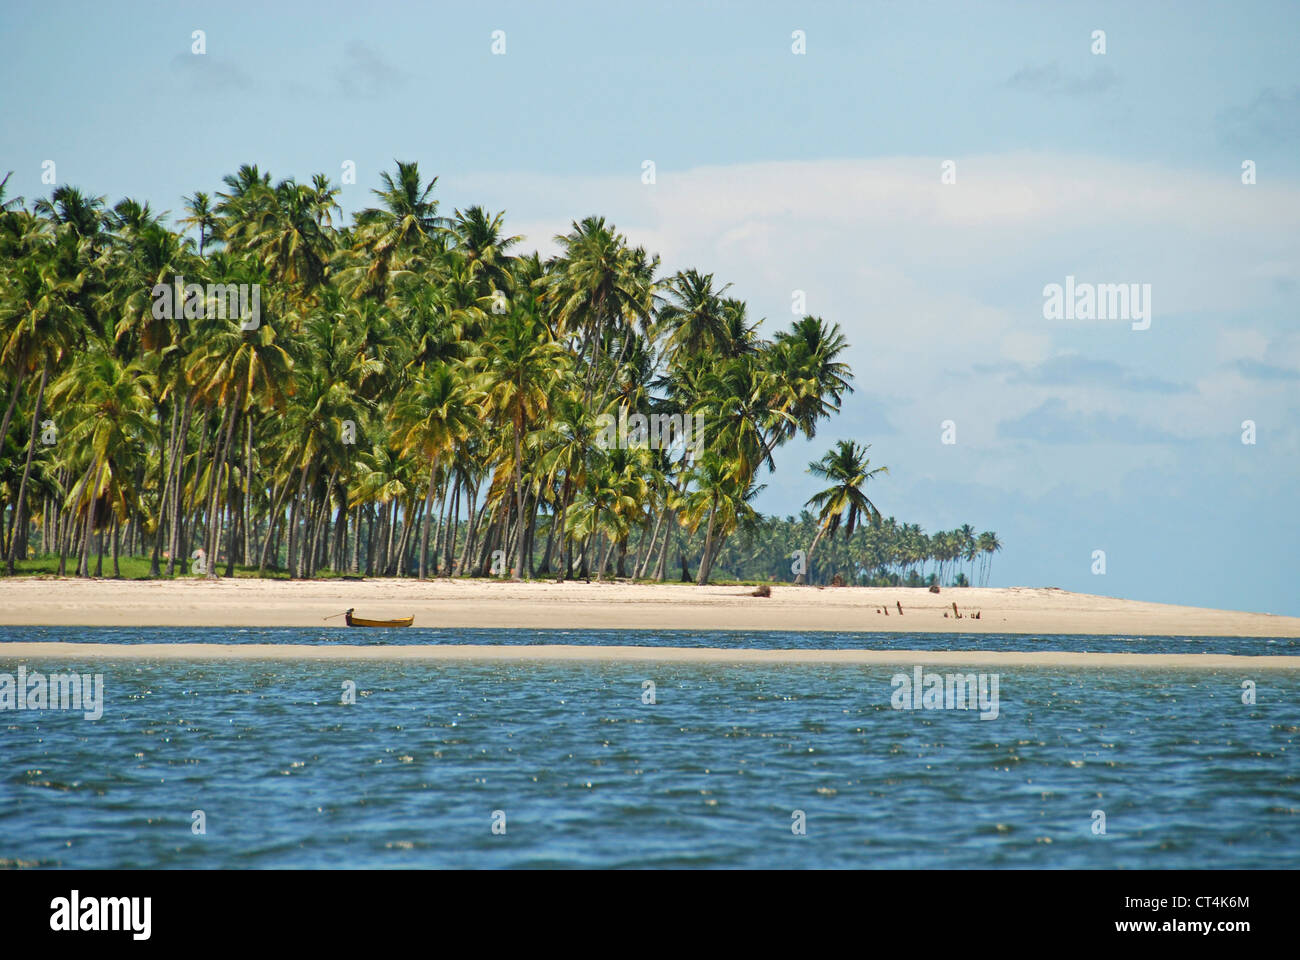 Brazil, Pernambuco, Praia dos Carneiros, white sand beach with palm trees Stock Photo